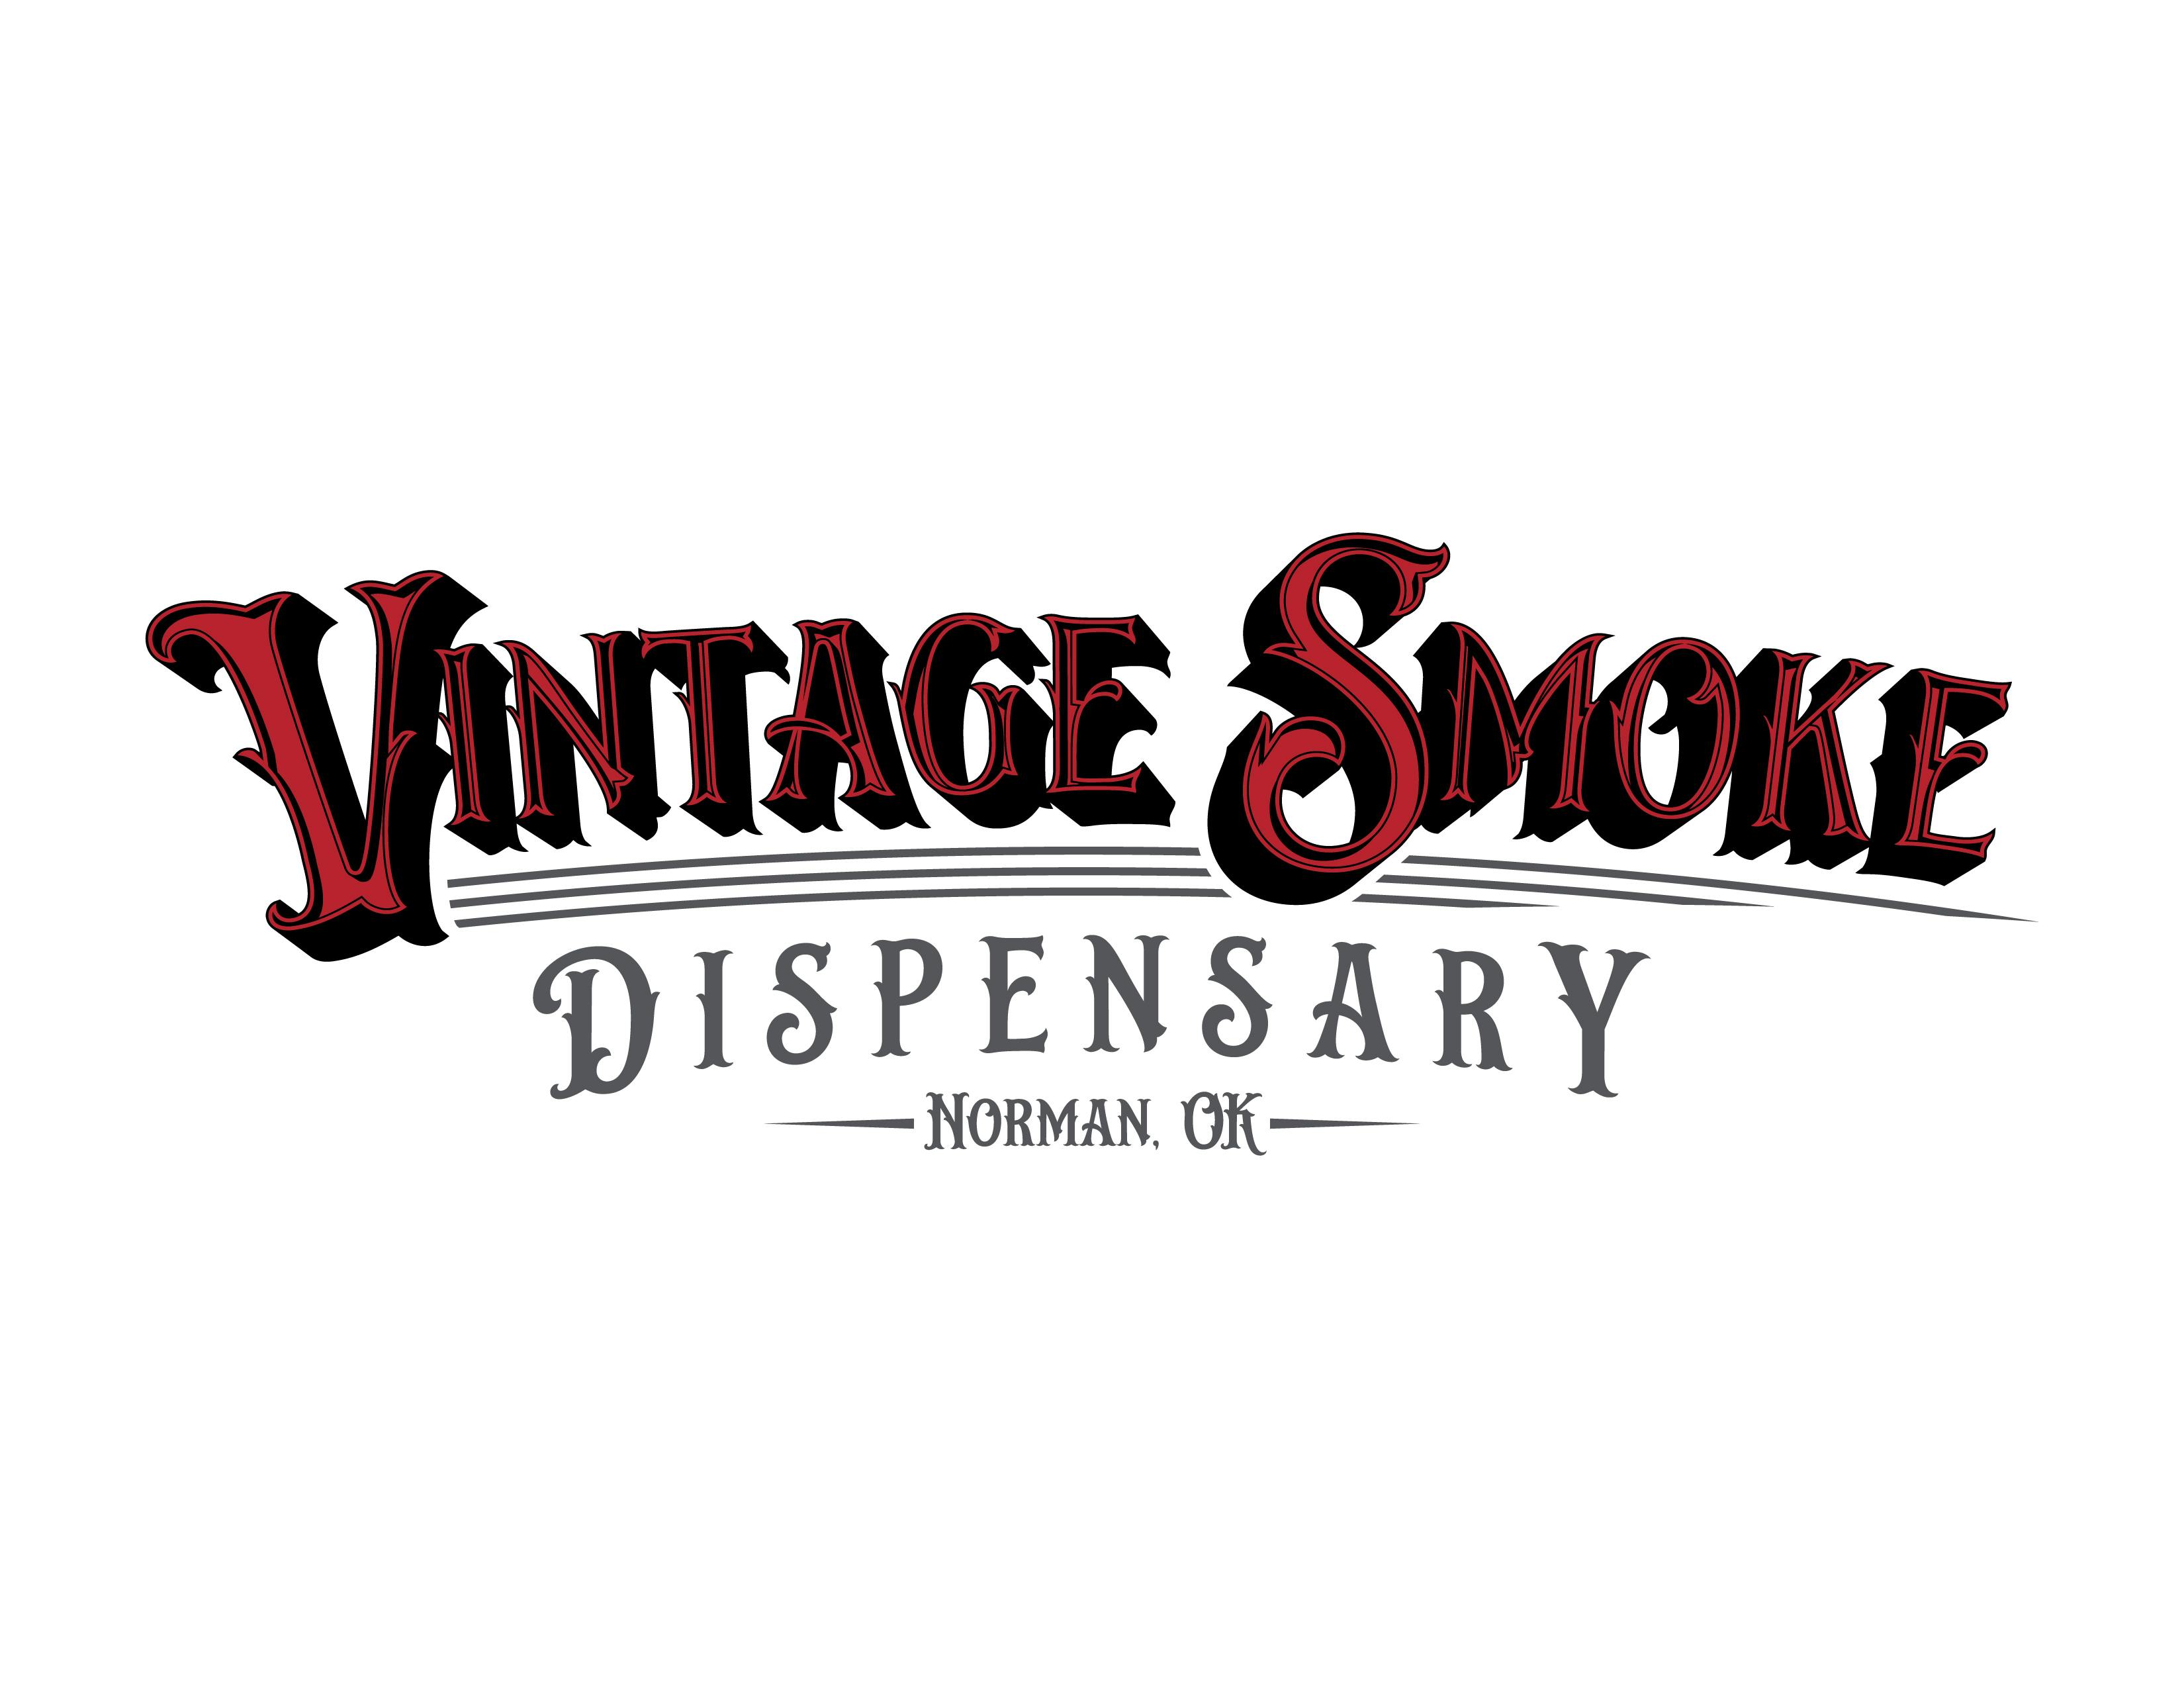 The Vintage Smoke Dispensary